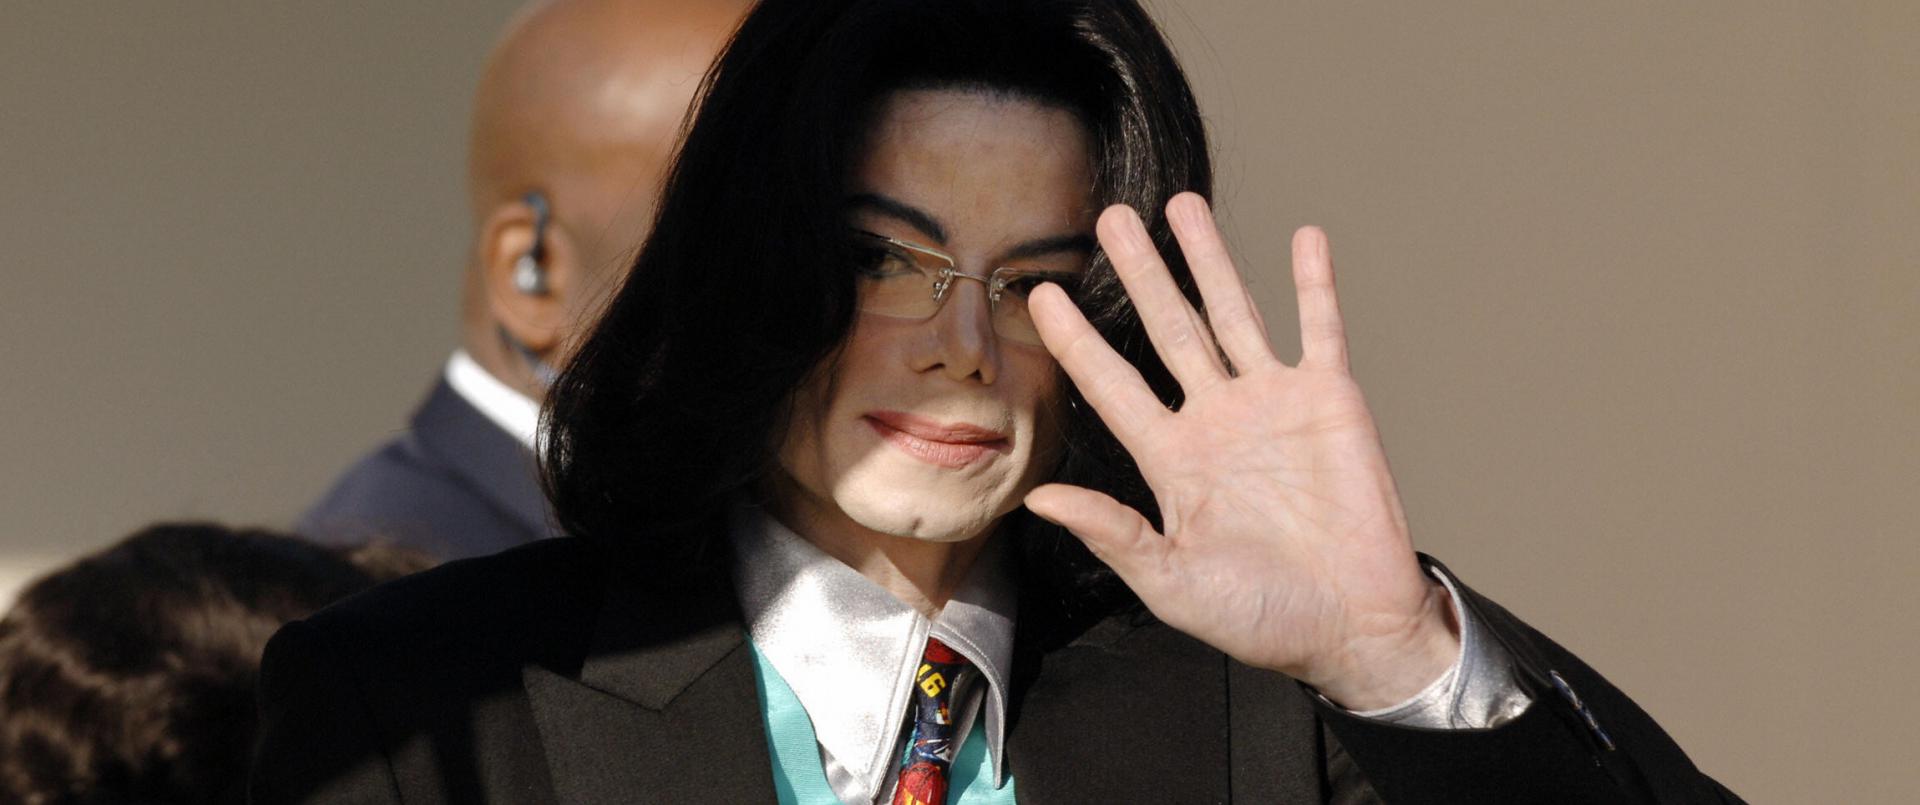 Тело Майкла Джексона хотят эксгумировать - фото 1